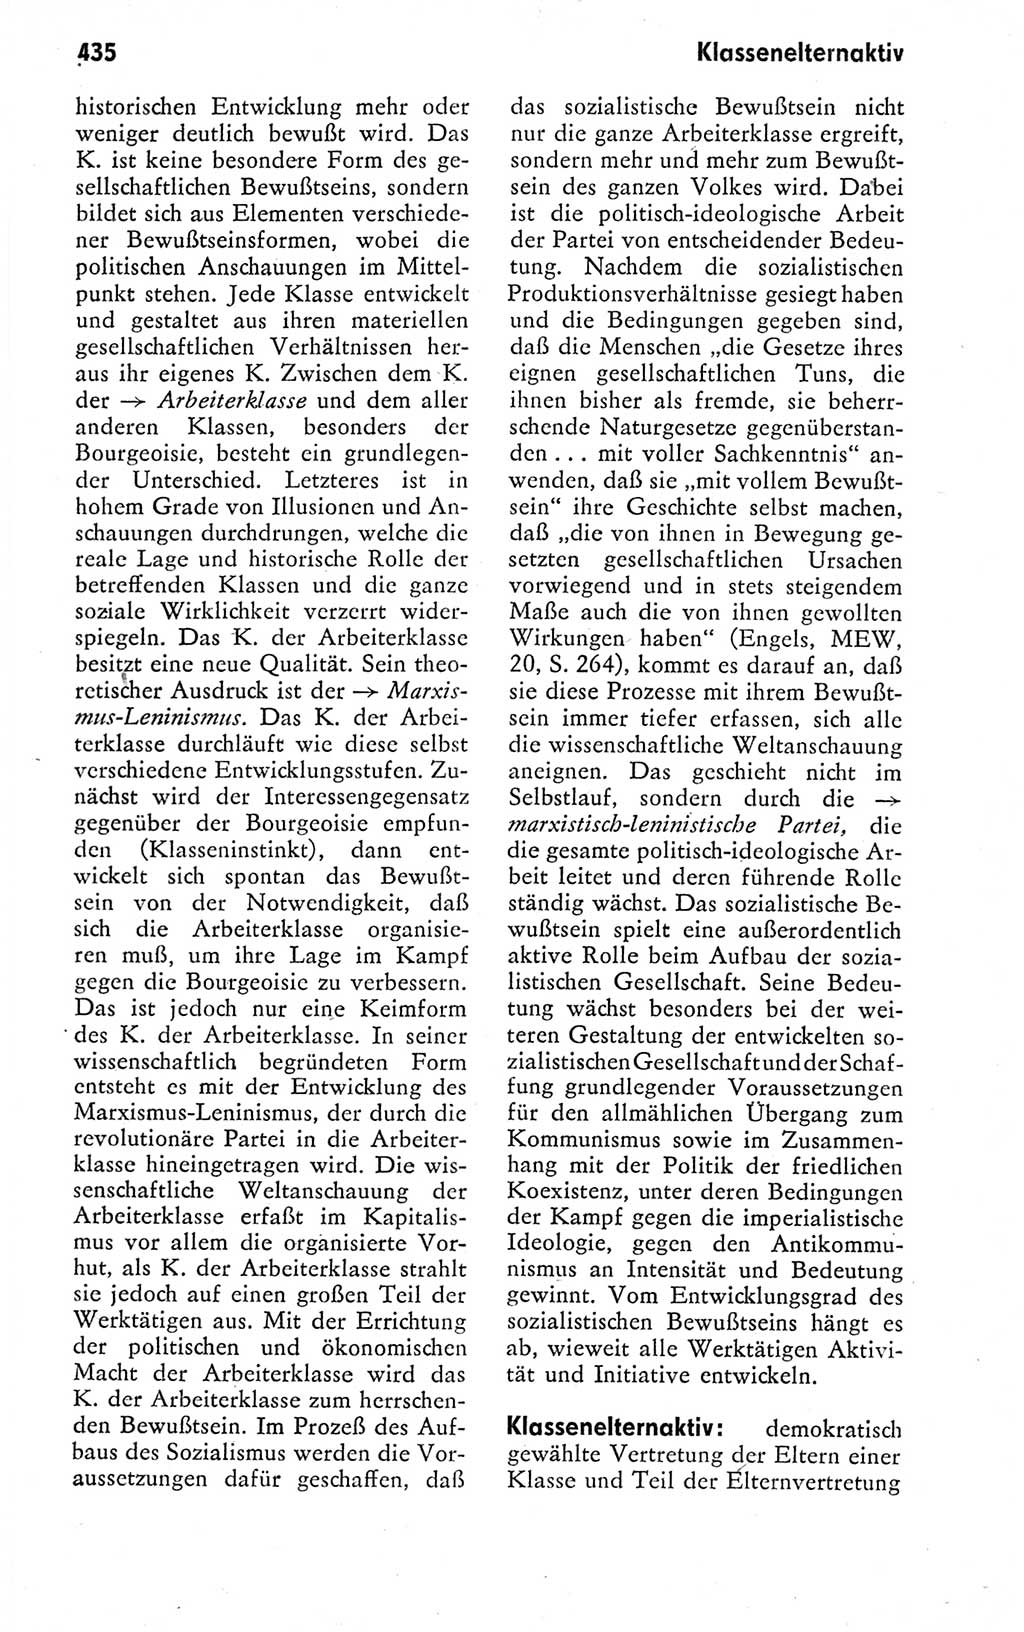 Kleines politisches Wörterbuch [Deutsche Demokratische Republik (DDR)] 1978, Seite 435 (Kl. pol. Wb. DDR 1978, S. 435)